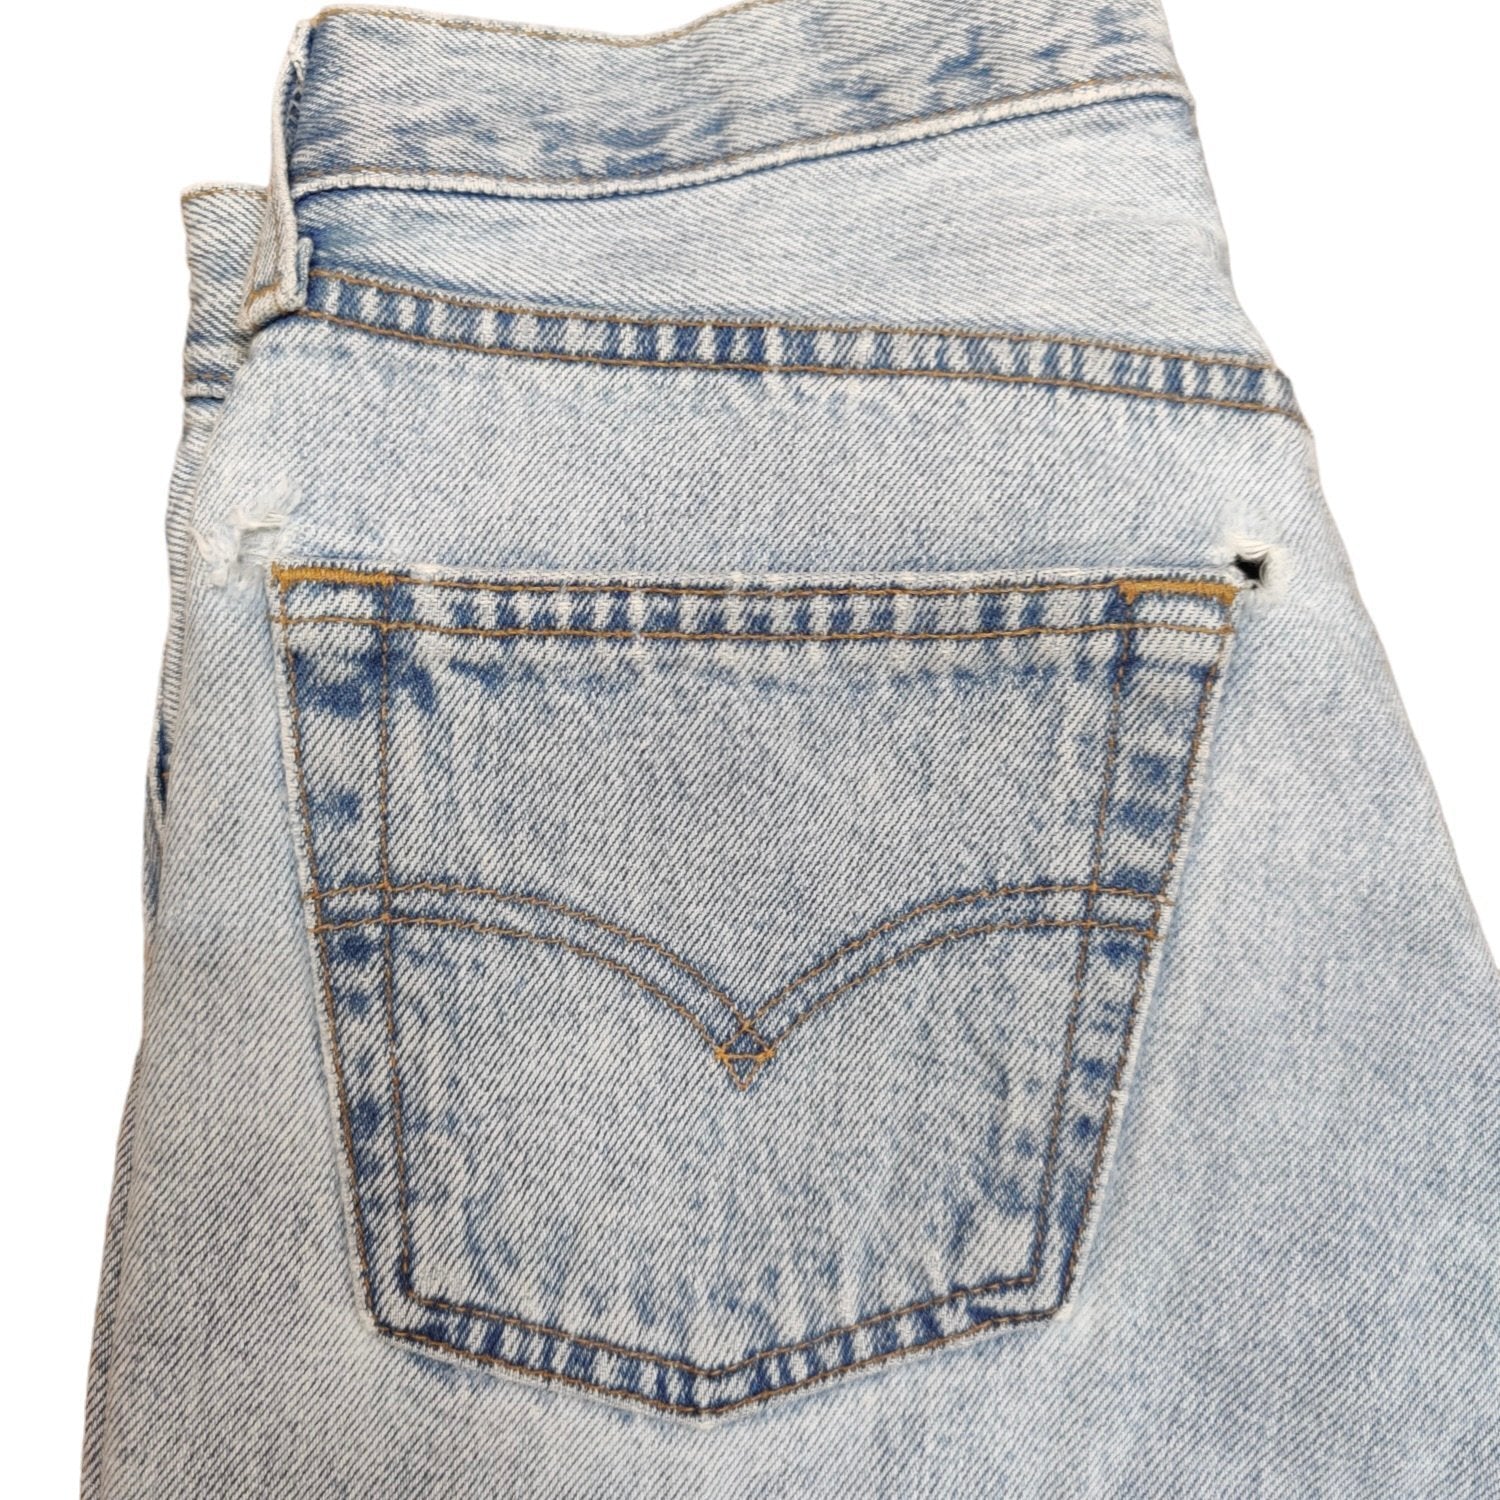 Vintage Levis 501 Blue Jeans (W27/L30) (W)